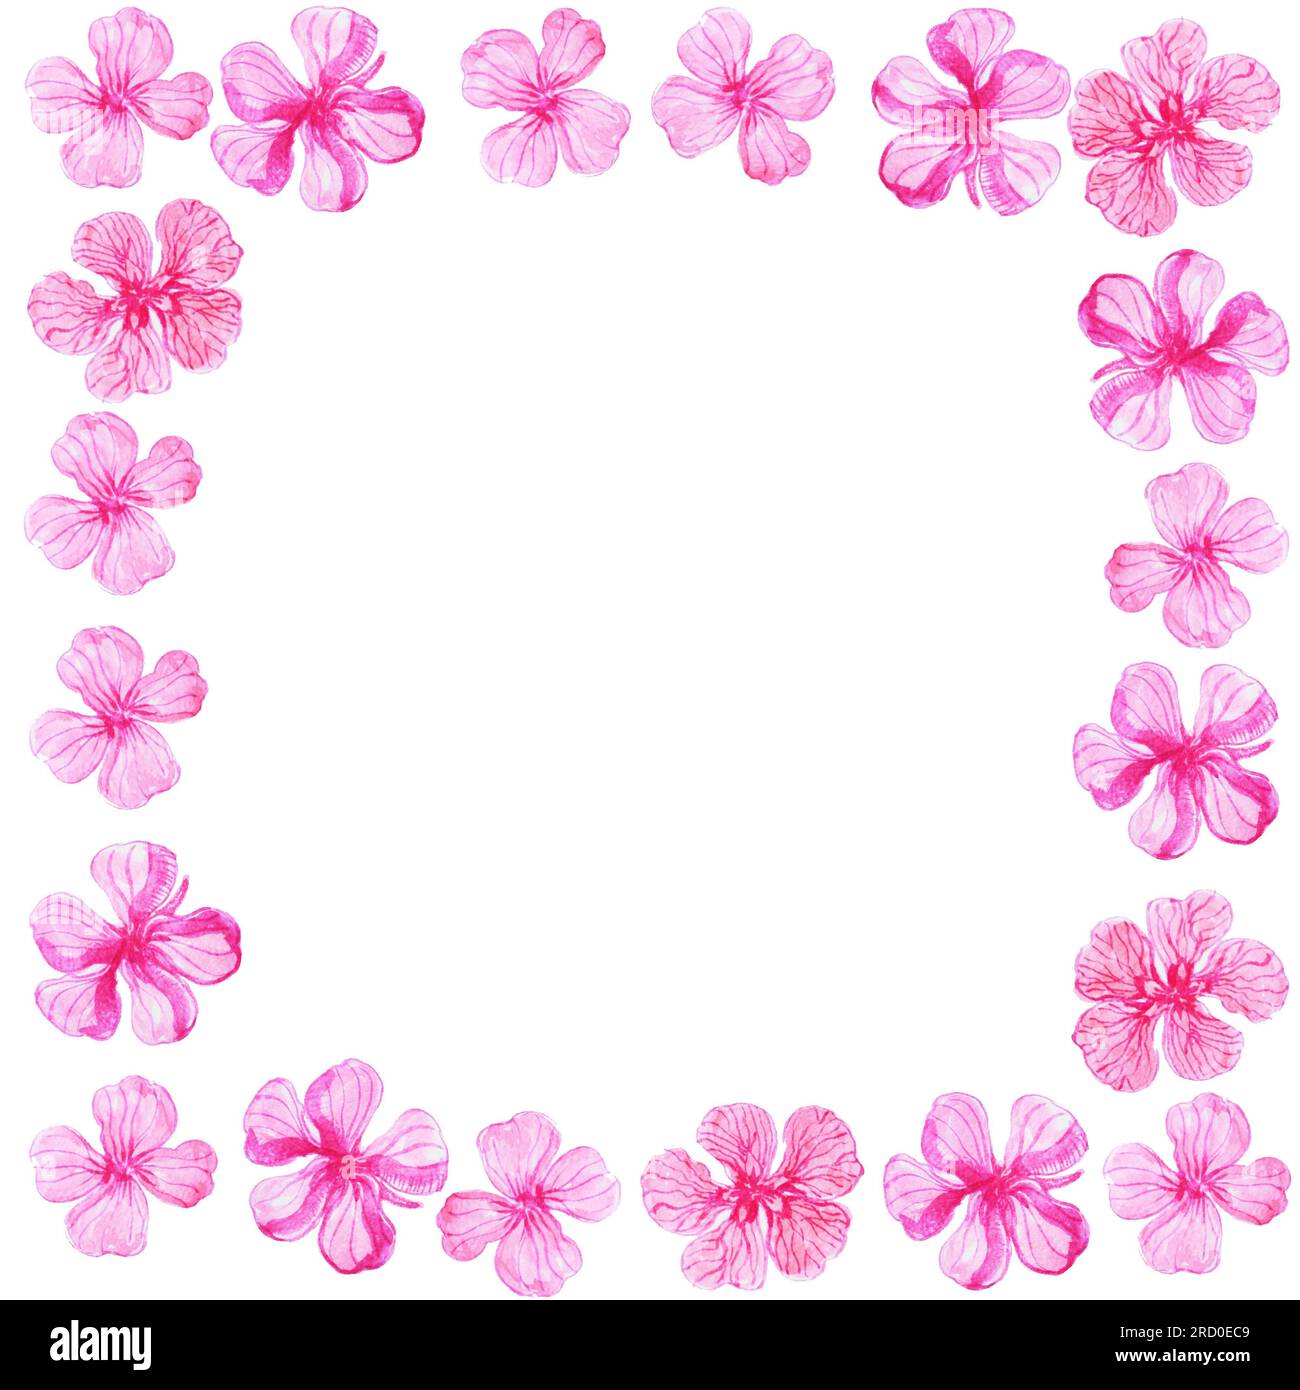 Aquarell mit pinkfarbenen fünf-Blatt-Blumen auf weißem Hintergrund Stockfoto